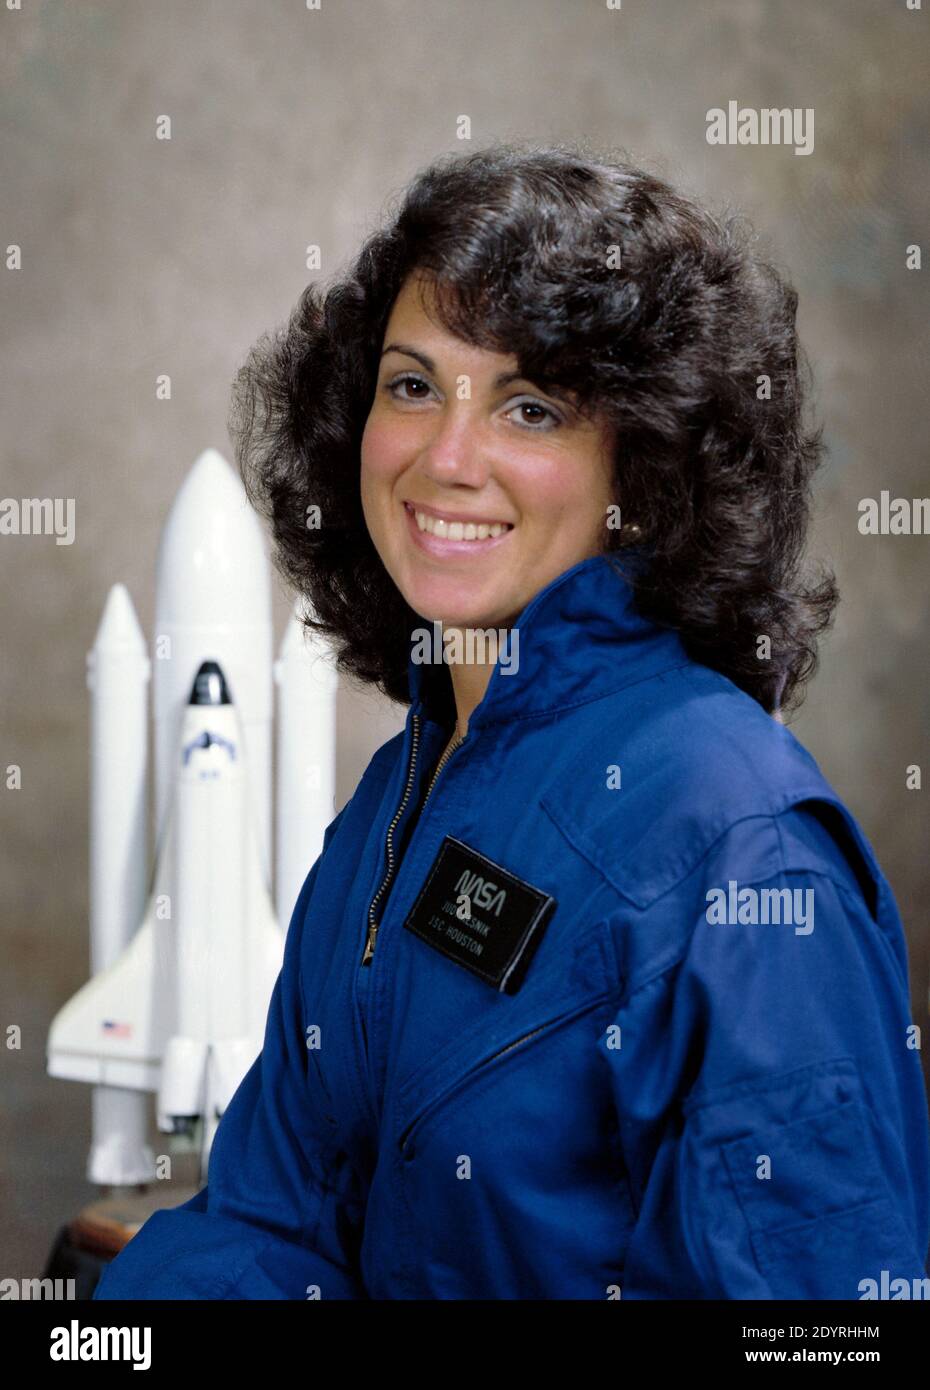 Judith Arlene Resnik (5 avril 1949 – 28 janvier 1986) Ingénieur électrique américain, ingénieur logiciel, ingénieur biomédical, pilote et astronaute de la NASA qui est décédé à bord de la navette spatiale Challenger lorsqu'elle a été détruite lors du lancement de la mission STS-51-L. Resnik était la deuxième femme américaine dans l'espace et la quatrième femme dans l'espace dans le monde entier, enregistrant 145 heures en orbite. Elle a été la première femme juive de toute nationalité dans l'espace. Le prix Judith Resnik de l'IEEE pour l'ingénierie spatiale est nommé en son honneur. Banque D'Images